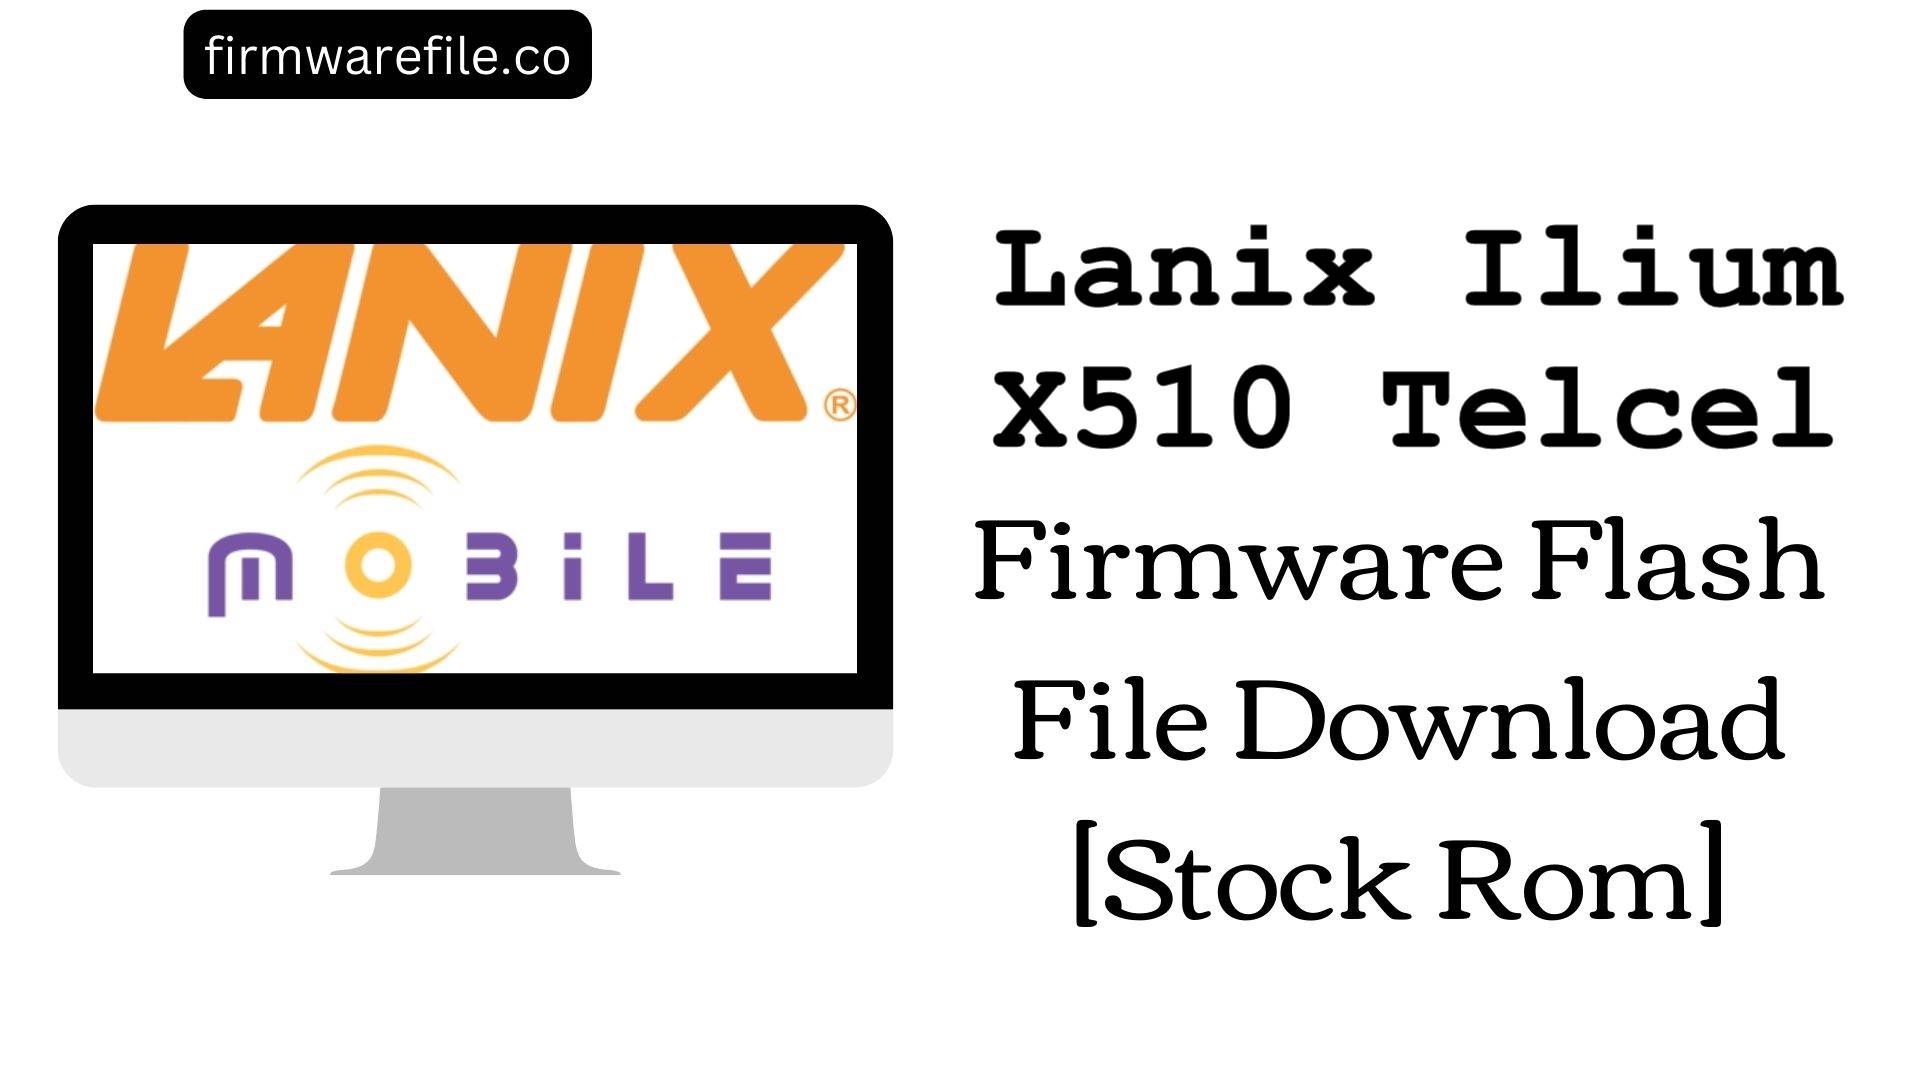 Lanix Ilium X510 Telcel